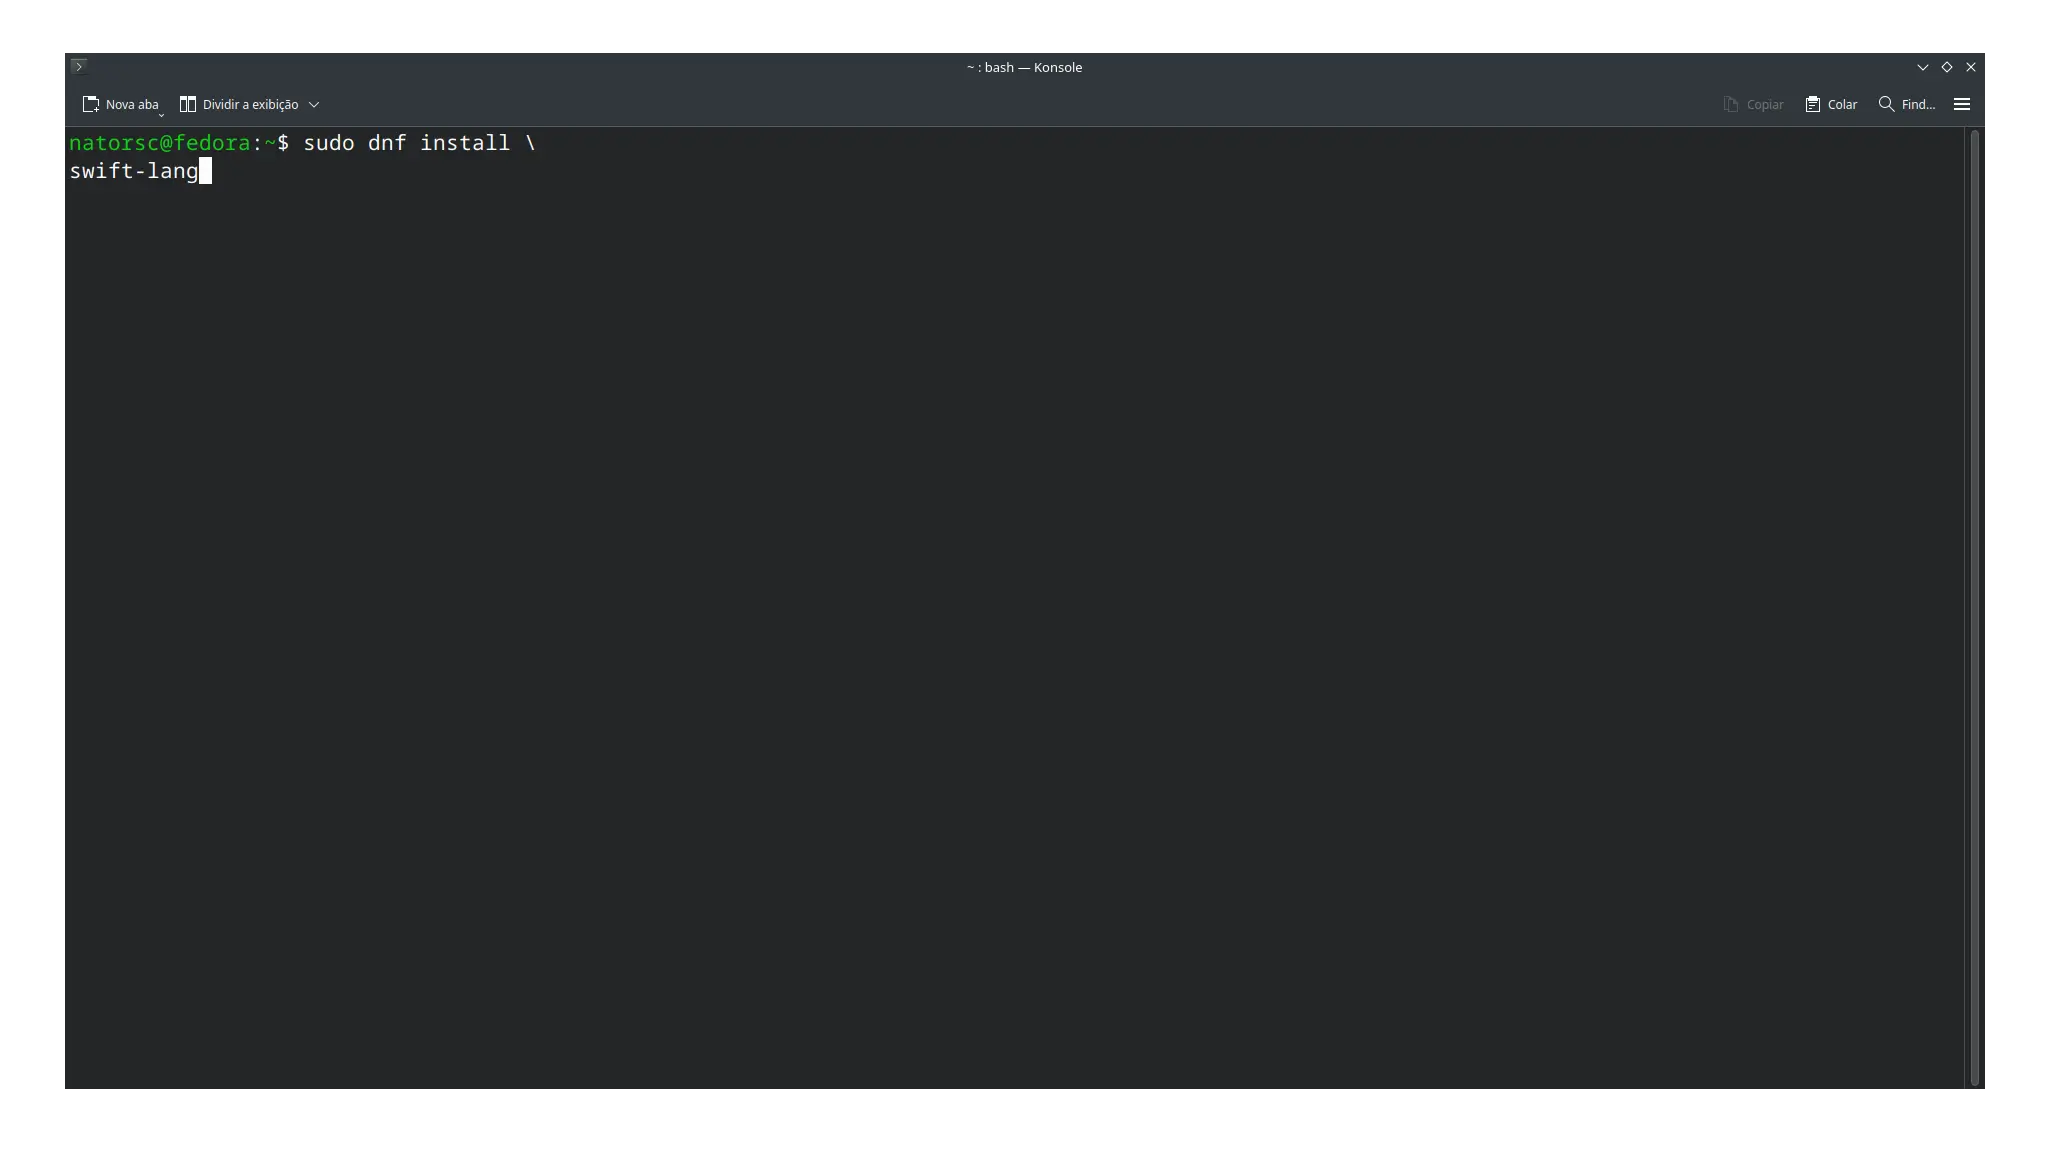 Instalando a linguagem de programação Swift na distribuição Linux Fedora.